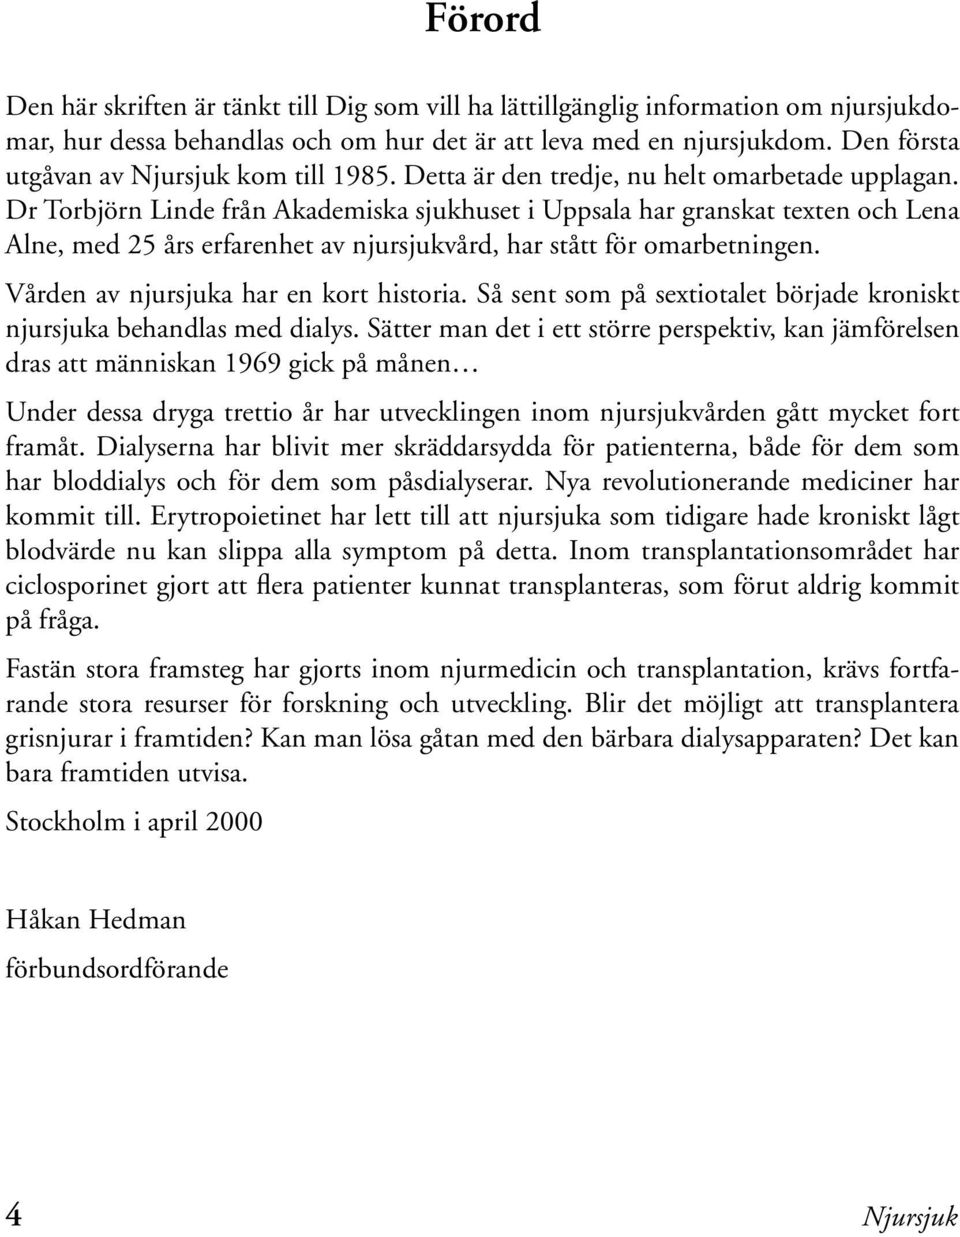 Dr Torbjörn Linde från Akademiska sjukhuset i Uppsala har granskat texten och Lena Alne, med 25 års erfarenhet av njursjukvård, har stått för omarbetningen. Vården av njursjuka har en kort historia.